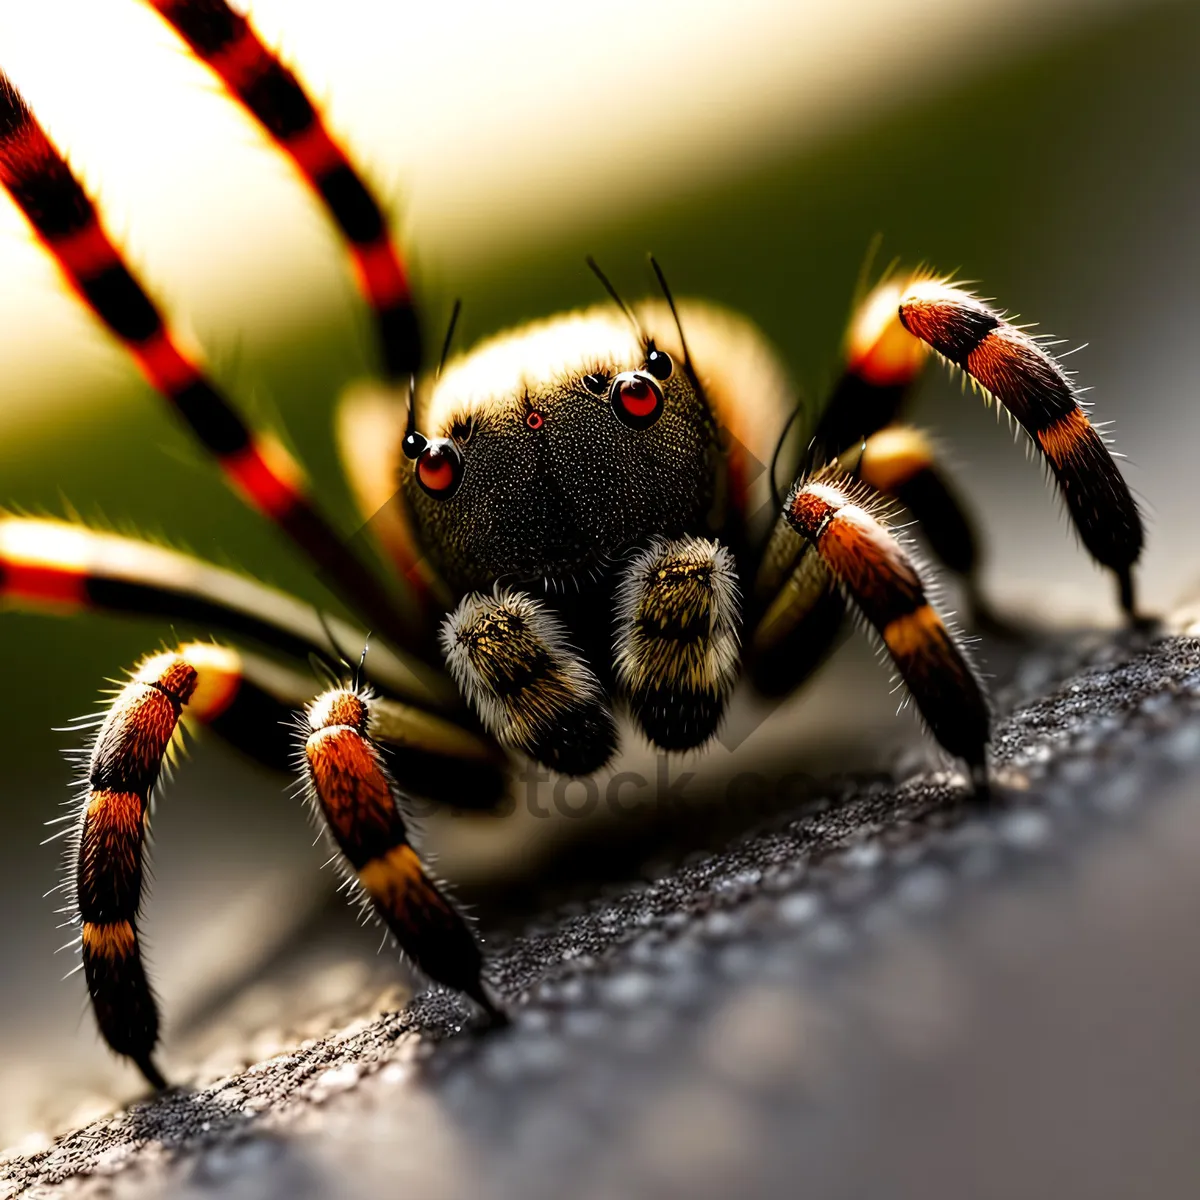 Picture of Wild Garden Spider - Close-up Arachnid Detail